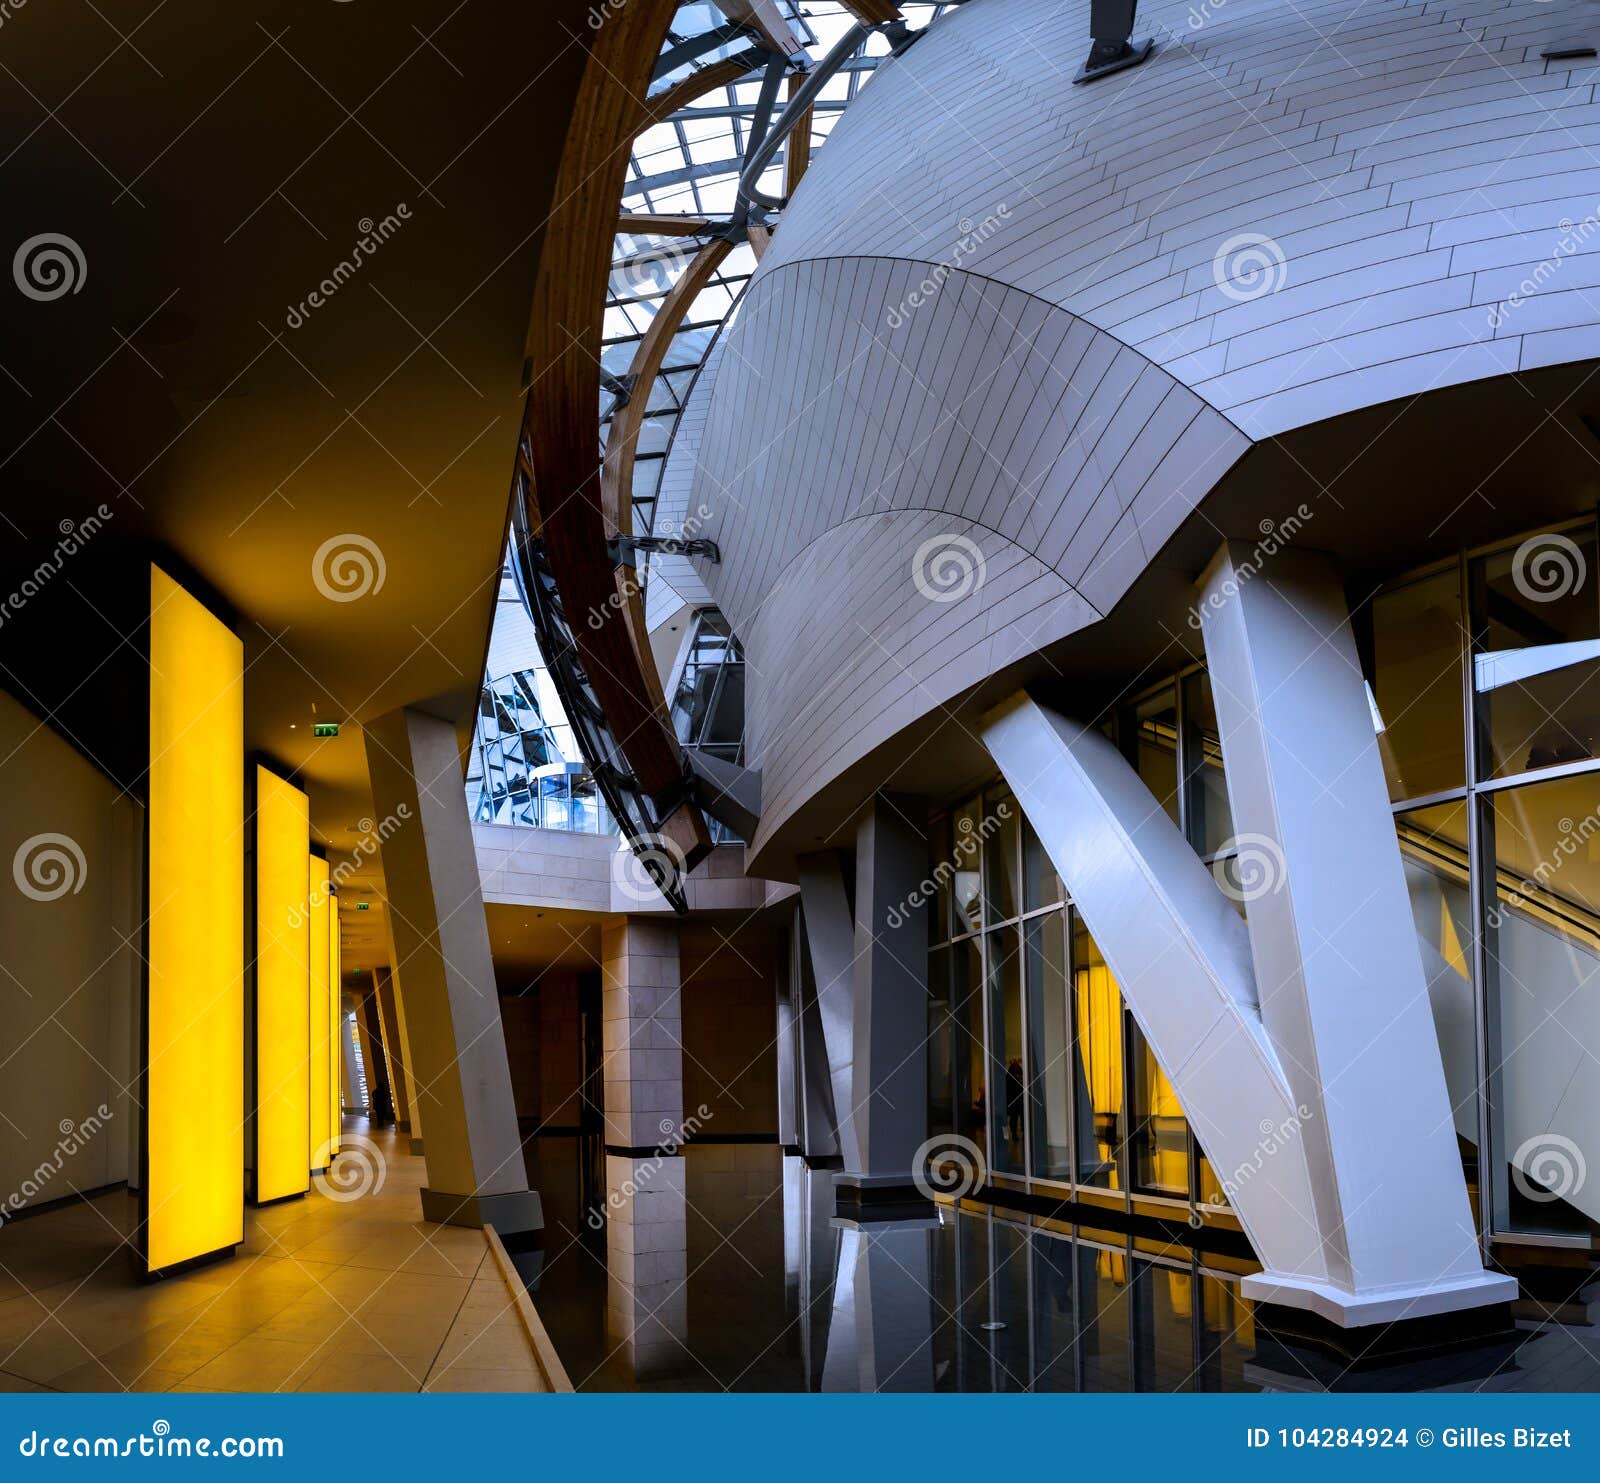 Paris - Fondation Louis Vuitton Editorial Stock Image - Image of city, boulogne: 104284924